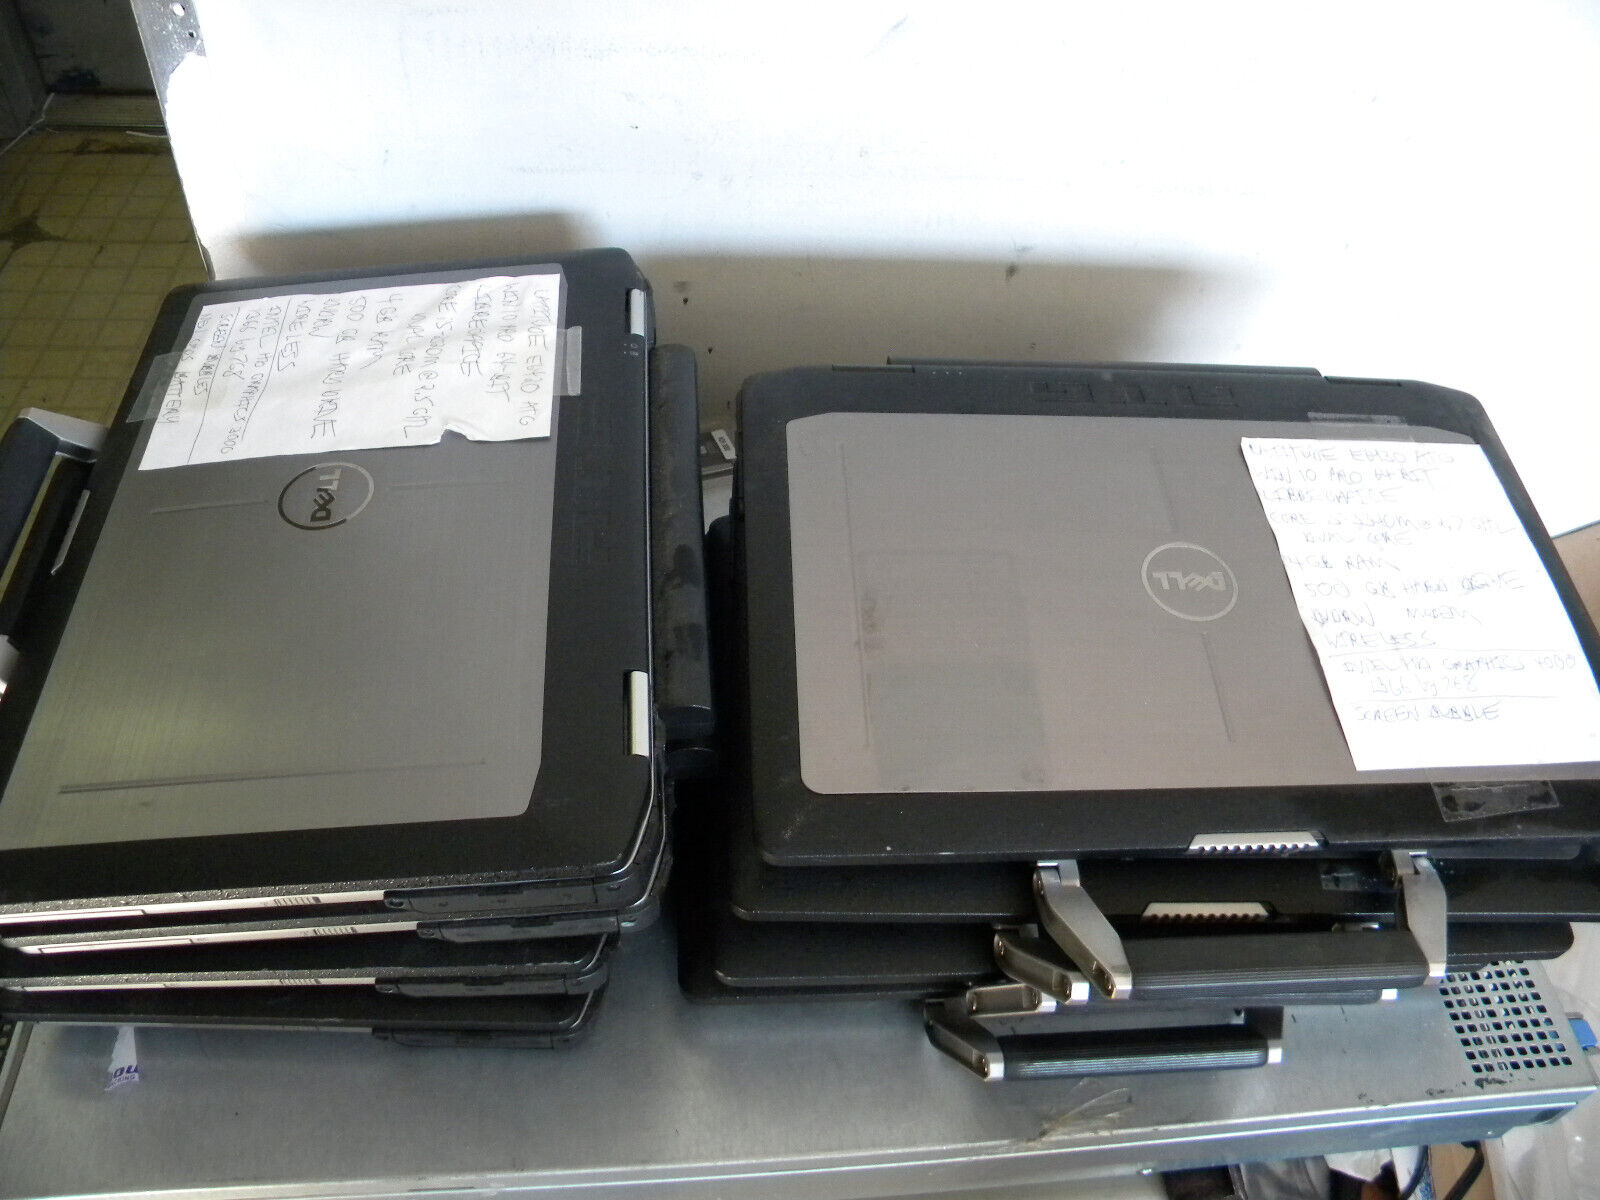 Lot of 8 Dell E6430 ATG i5 2.5- 2.6 2.7GHz 4-8GB win 10 500GB Passed Diagnostics